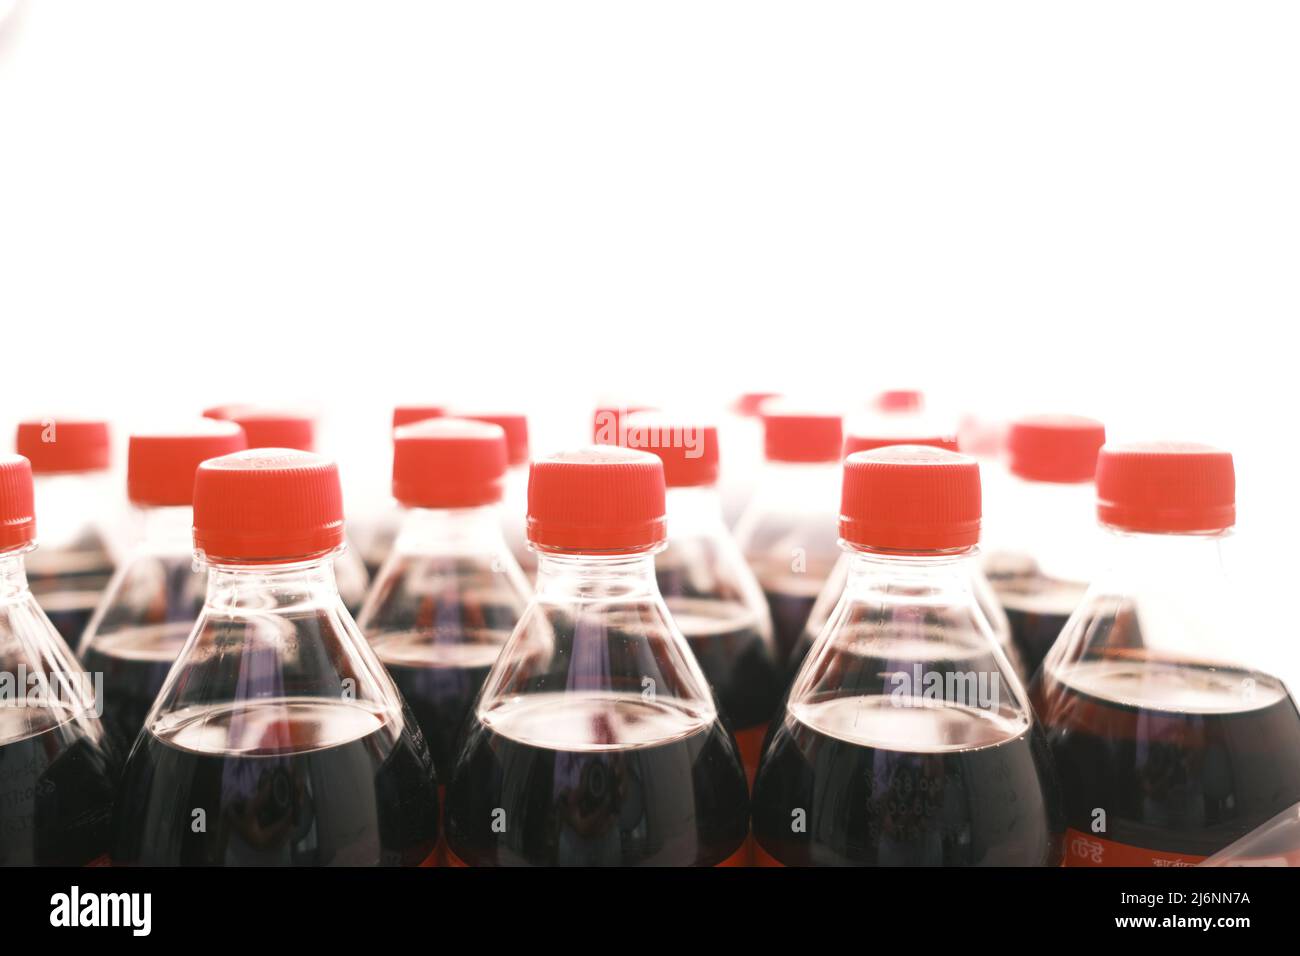 Plastikflaschen mit alkoholfreien Getränken auf dem Tisch Stockfoto